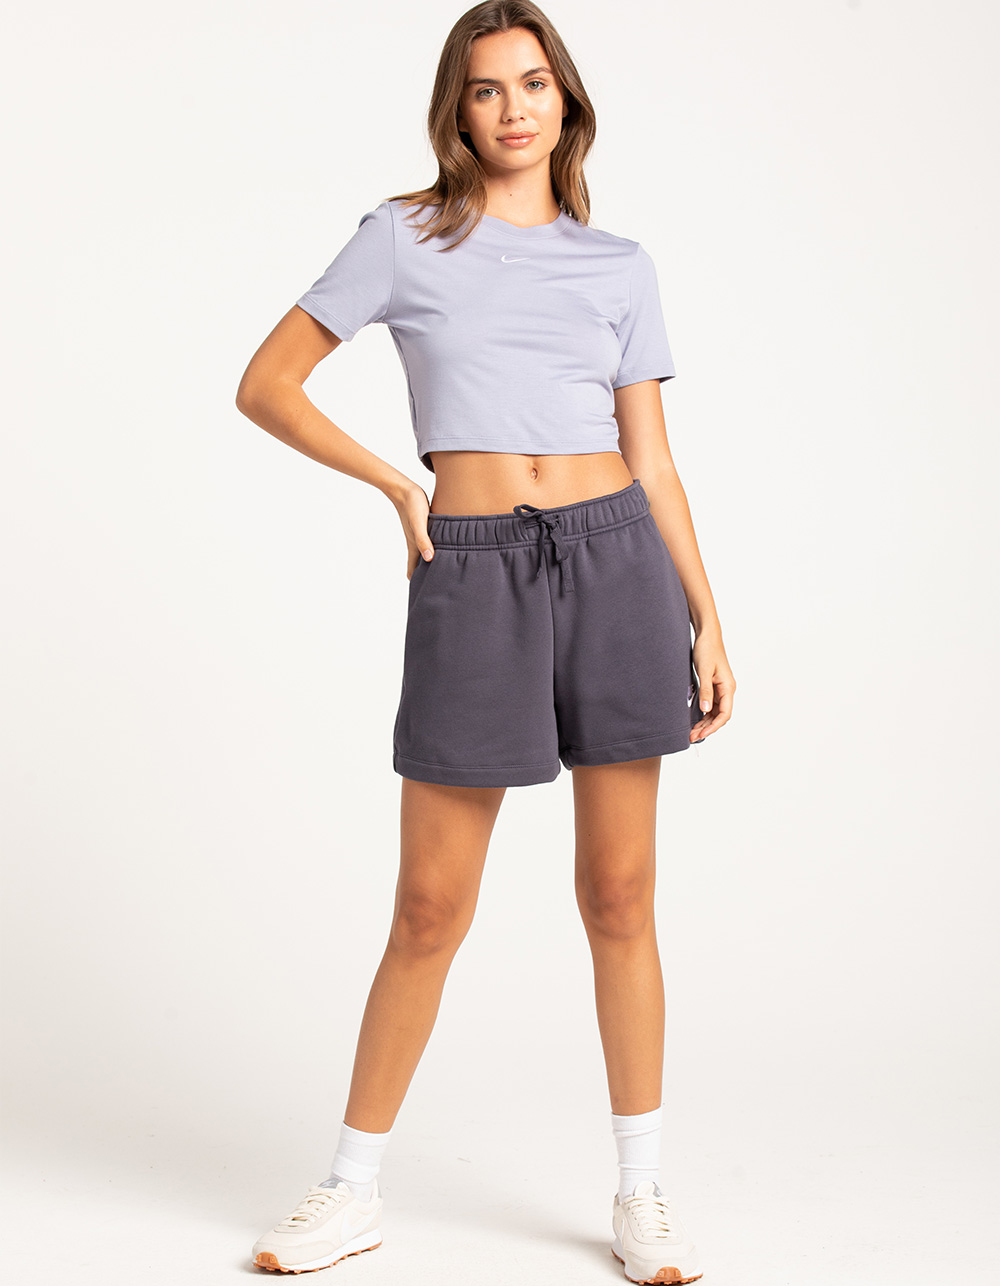 NIKE Sportswear Essential Slim Crop Womens Tee - PERIWINKLE | Tillys